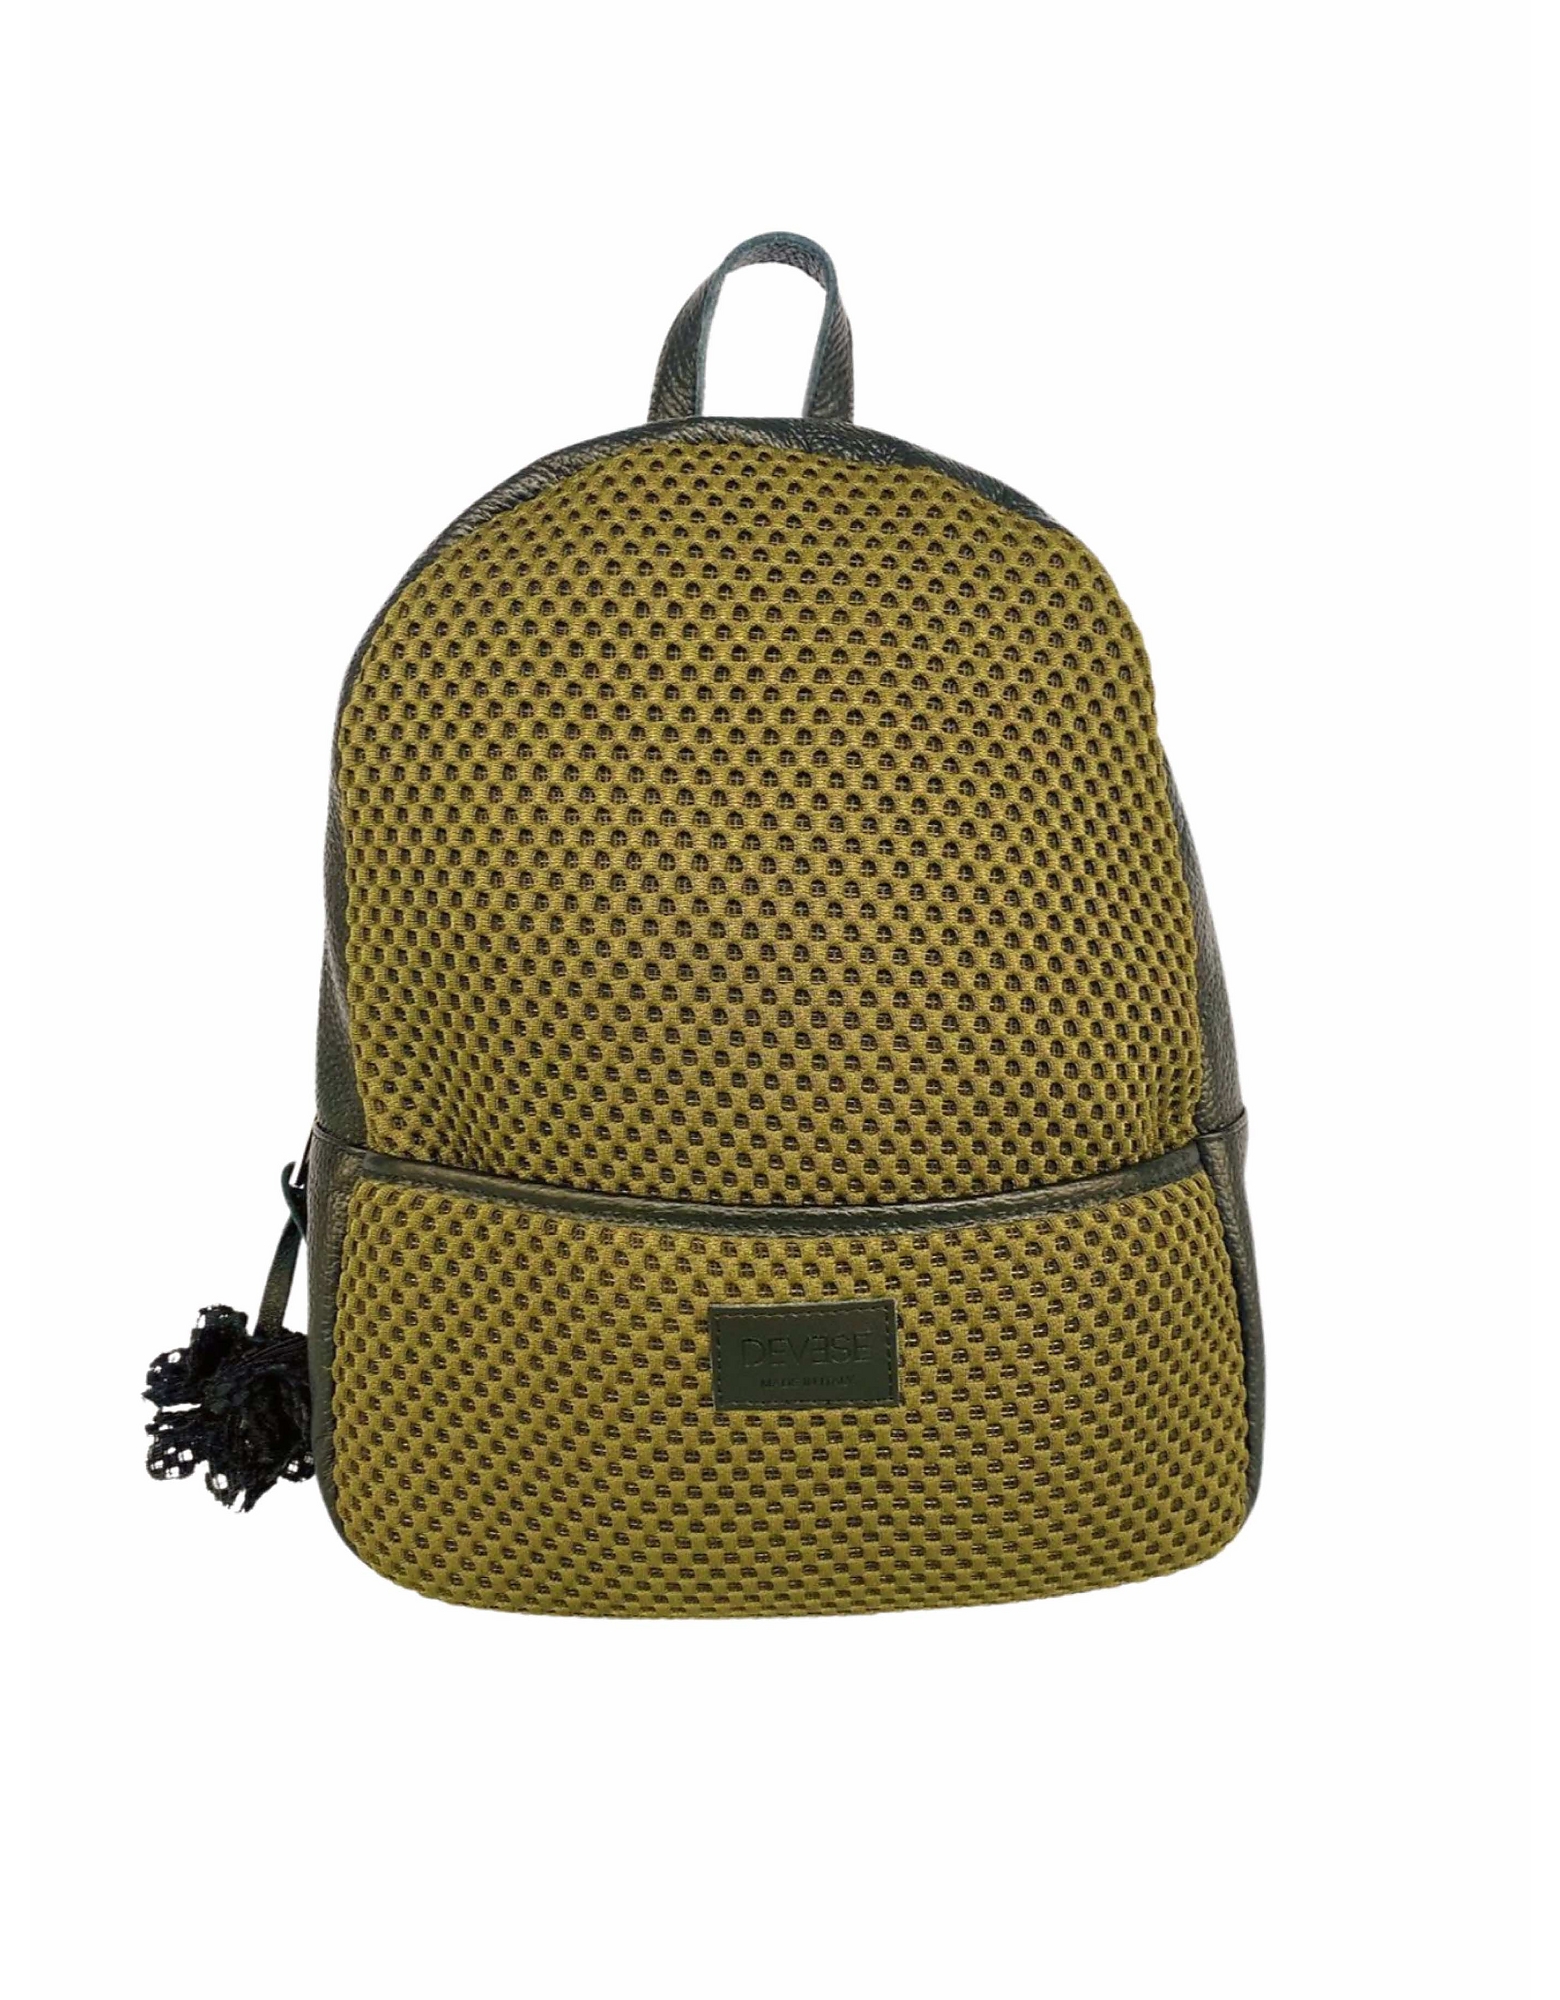 Devesé Designer Handbags Isabel - Textile And Leather Backpack In Vert